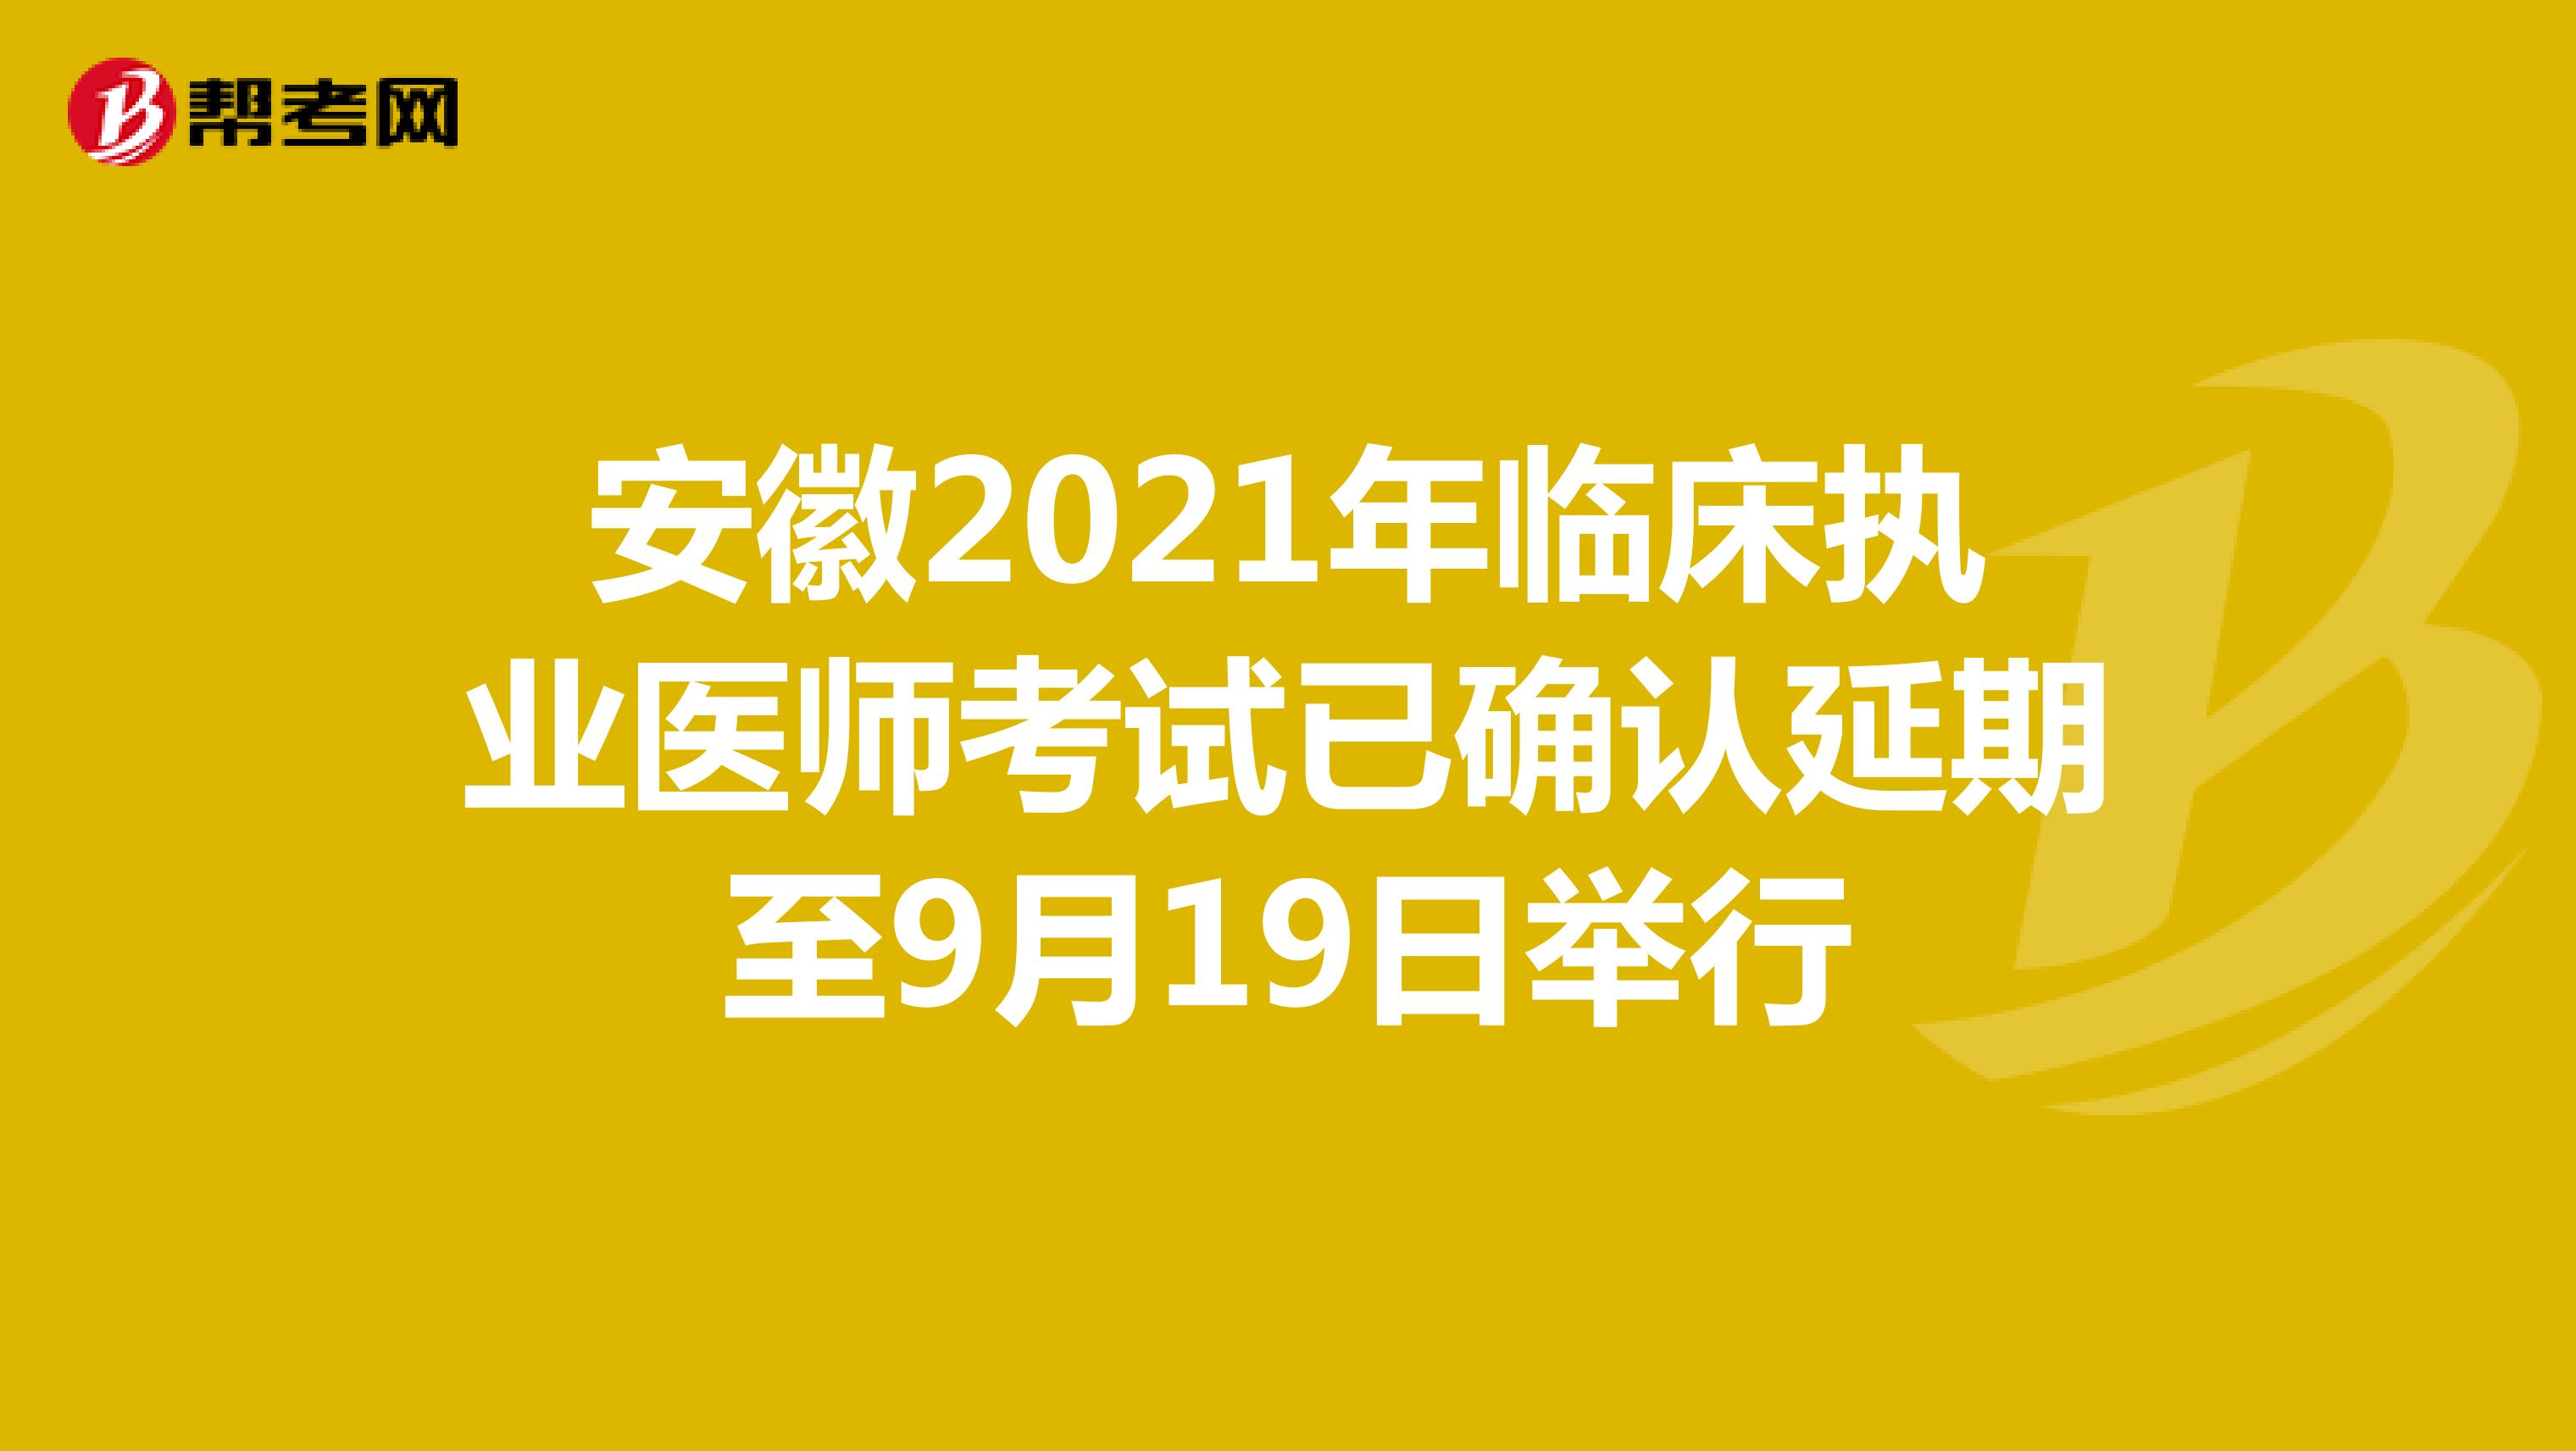 安徽2021年临床执业医师考试已确认延期至9月19日举行